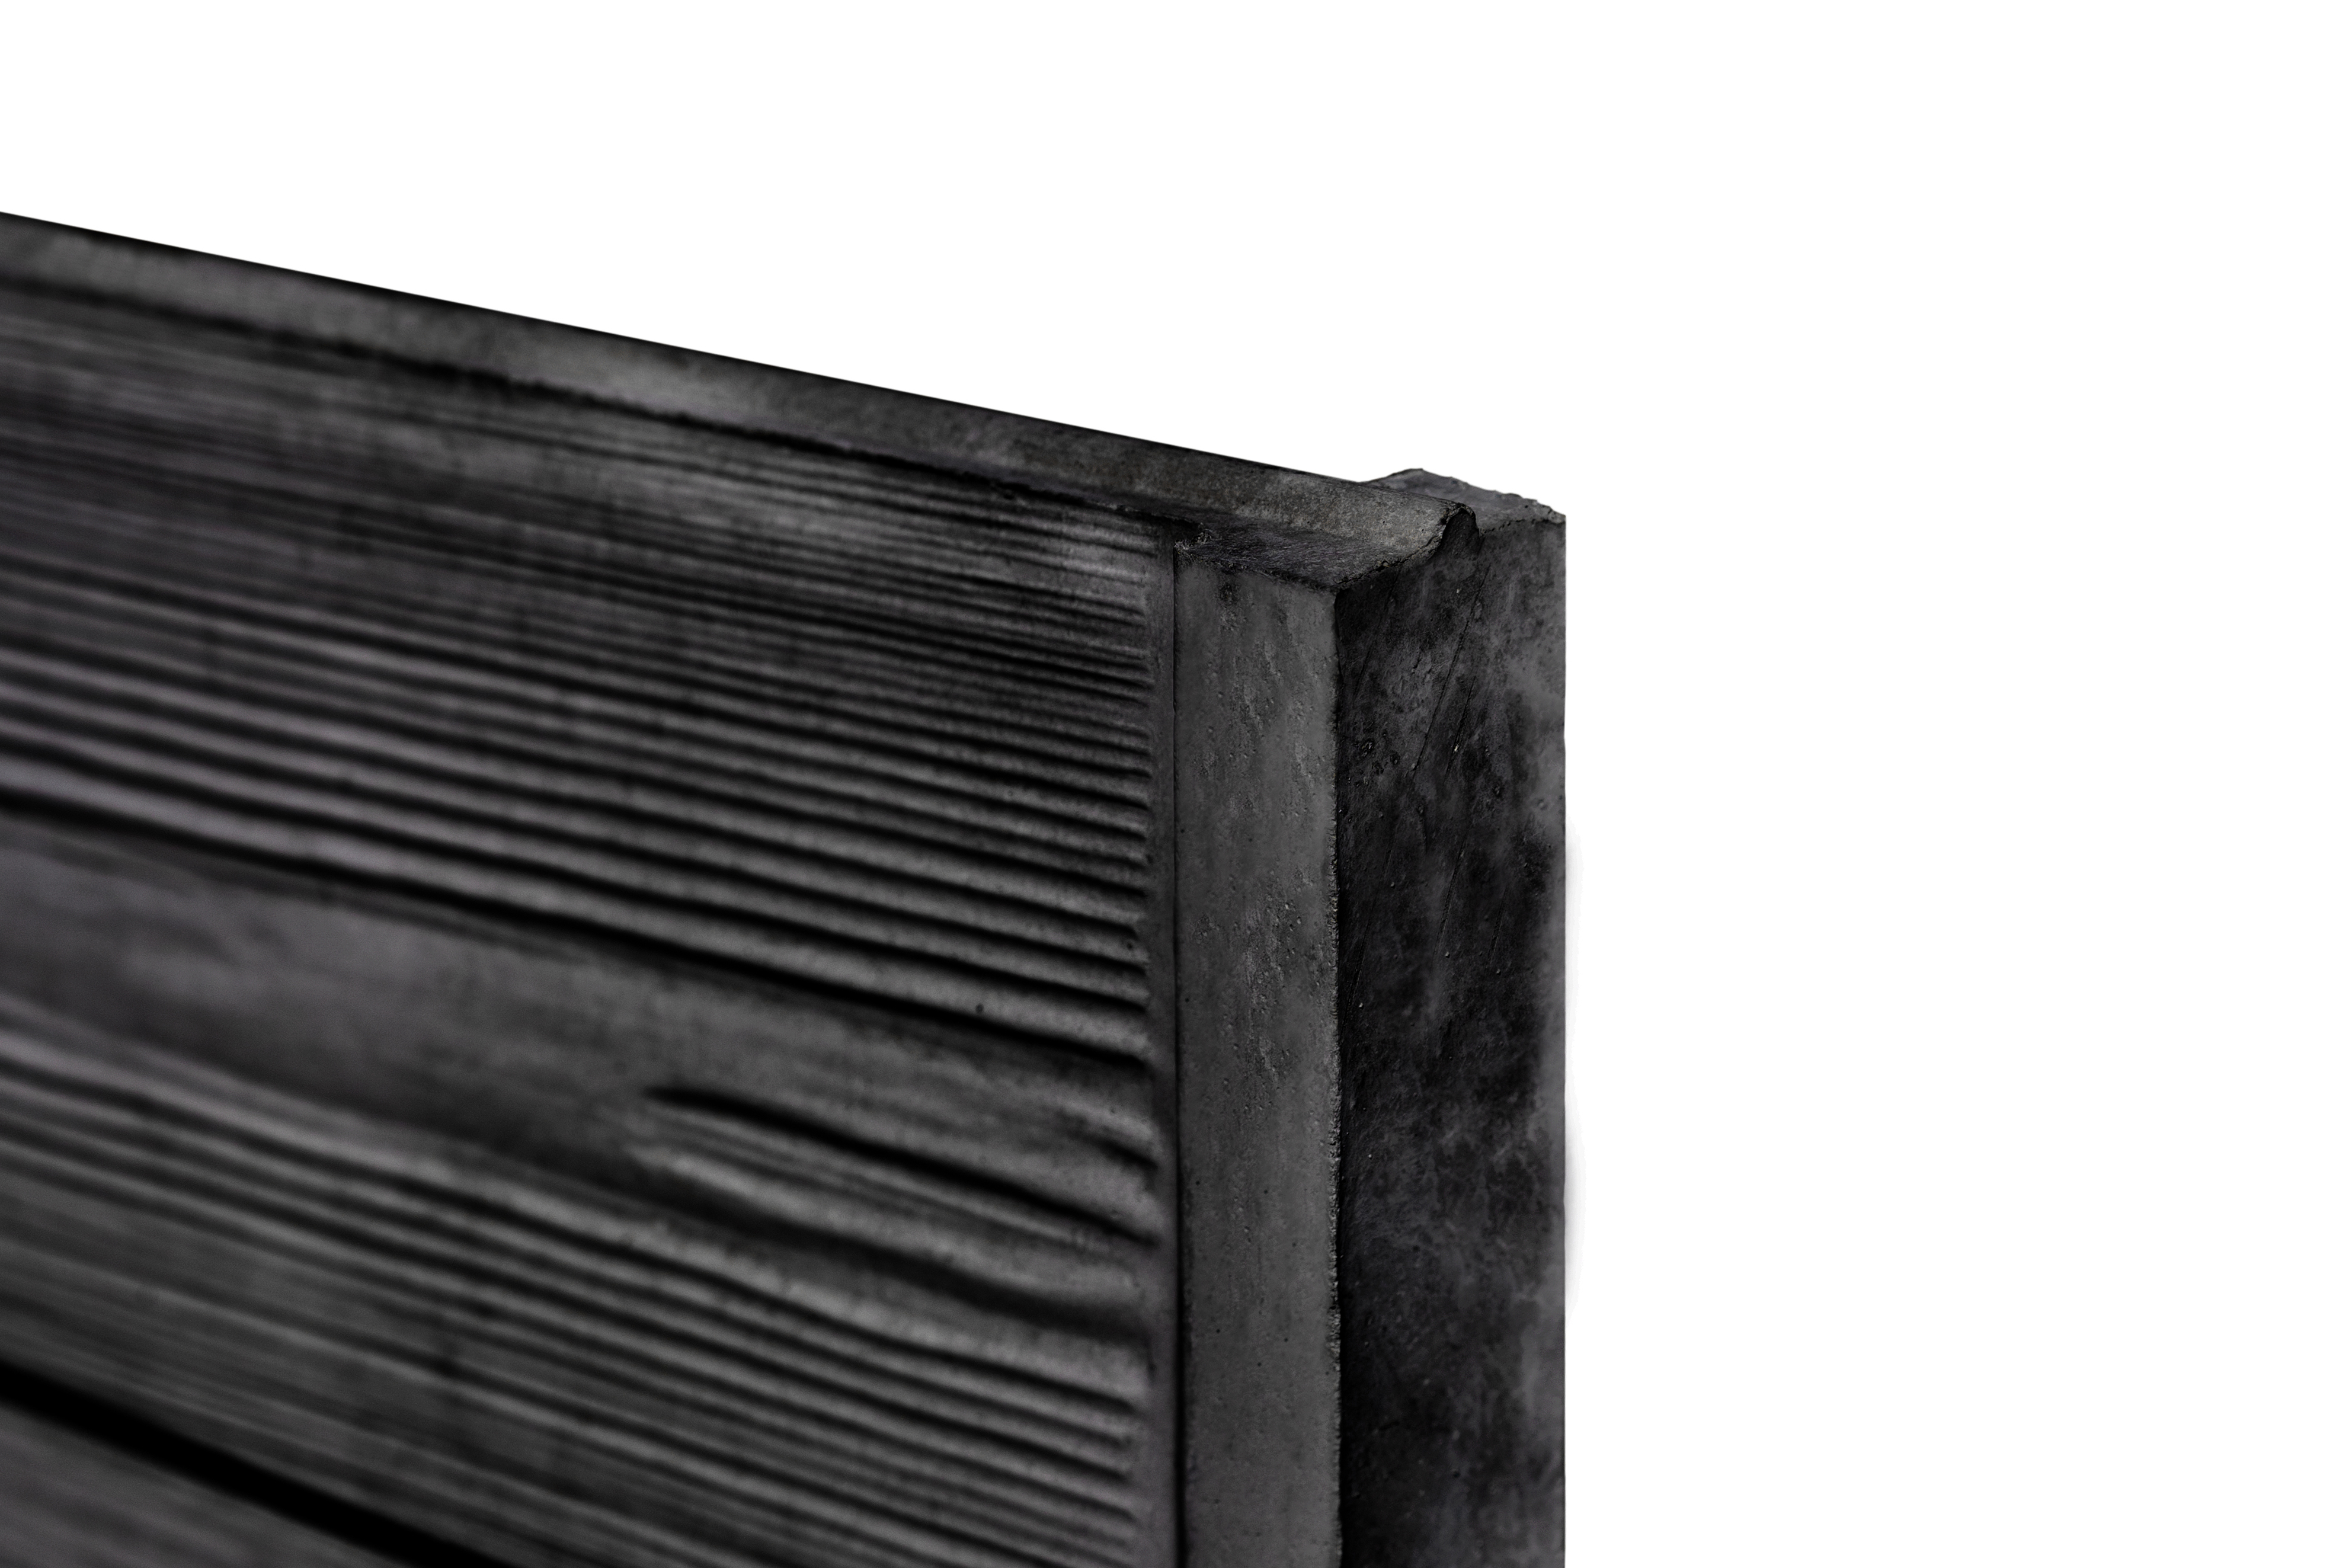 Berton©-motiefplaat smal antraciet gecoat H26 x D4,8 x L184 cm rabat-houtmotief